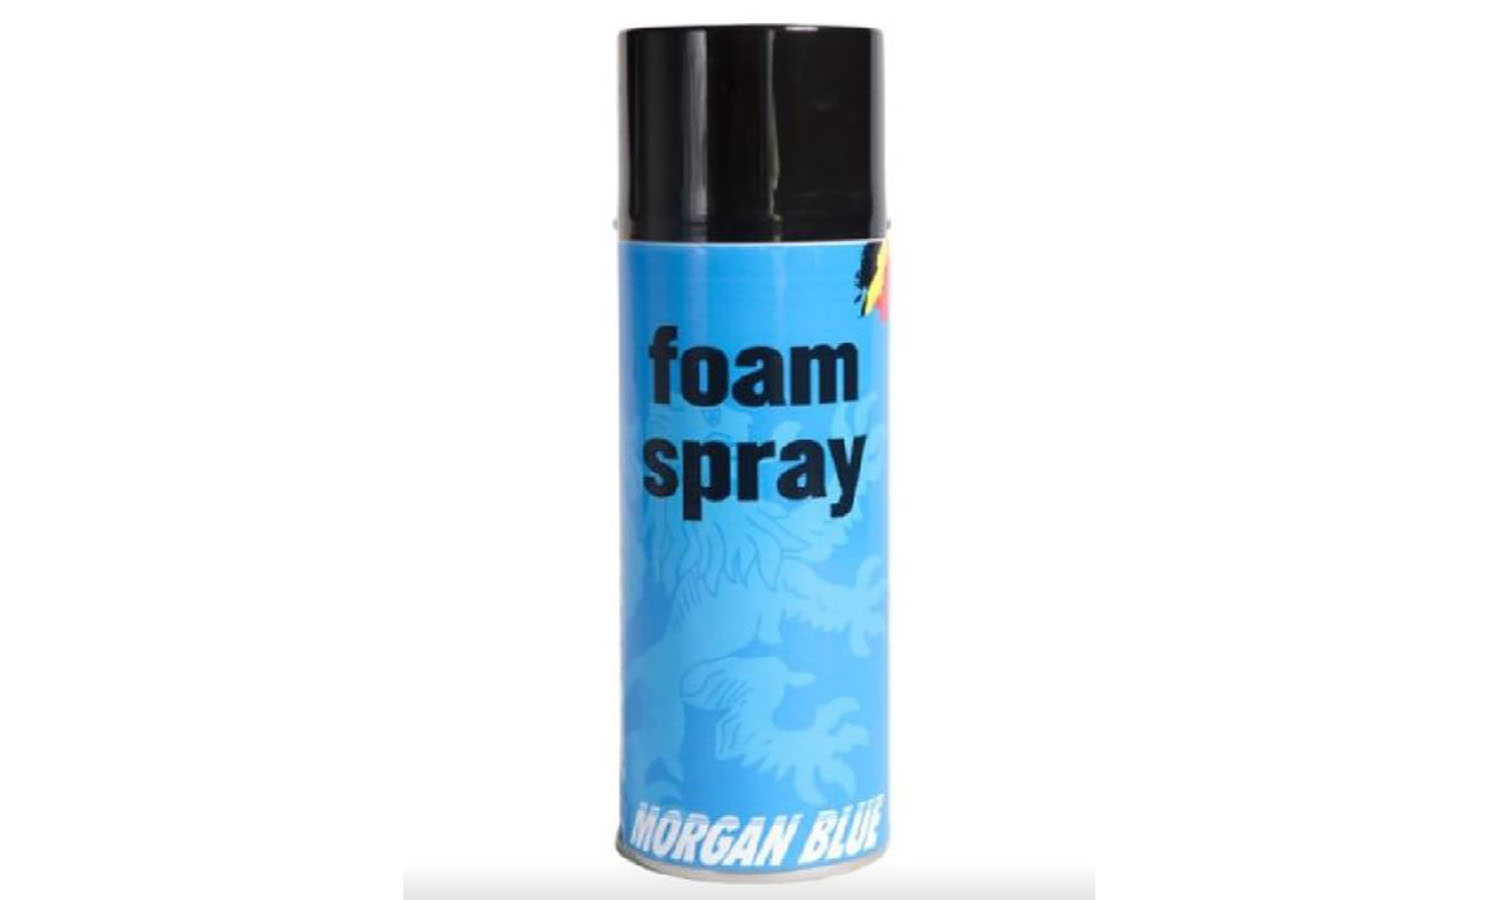 Фотография Очиститель Morgan Blue Foam Spray пенный аэрозоль 400 ml